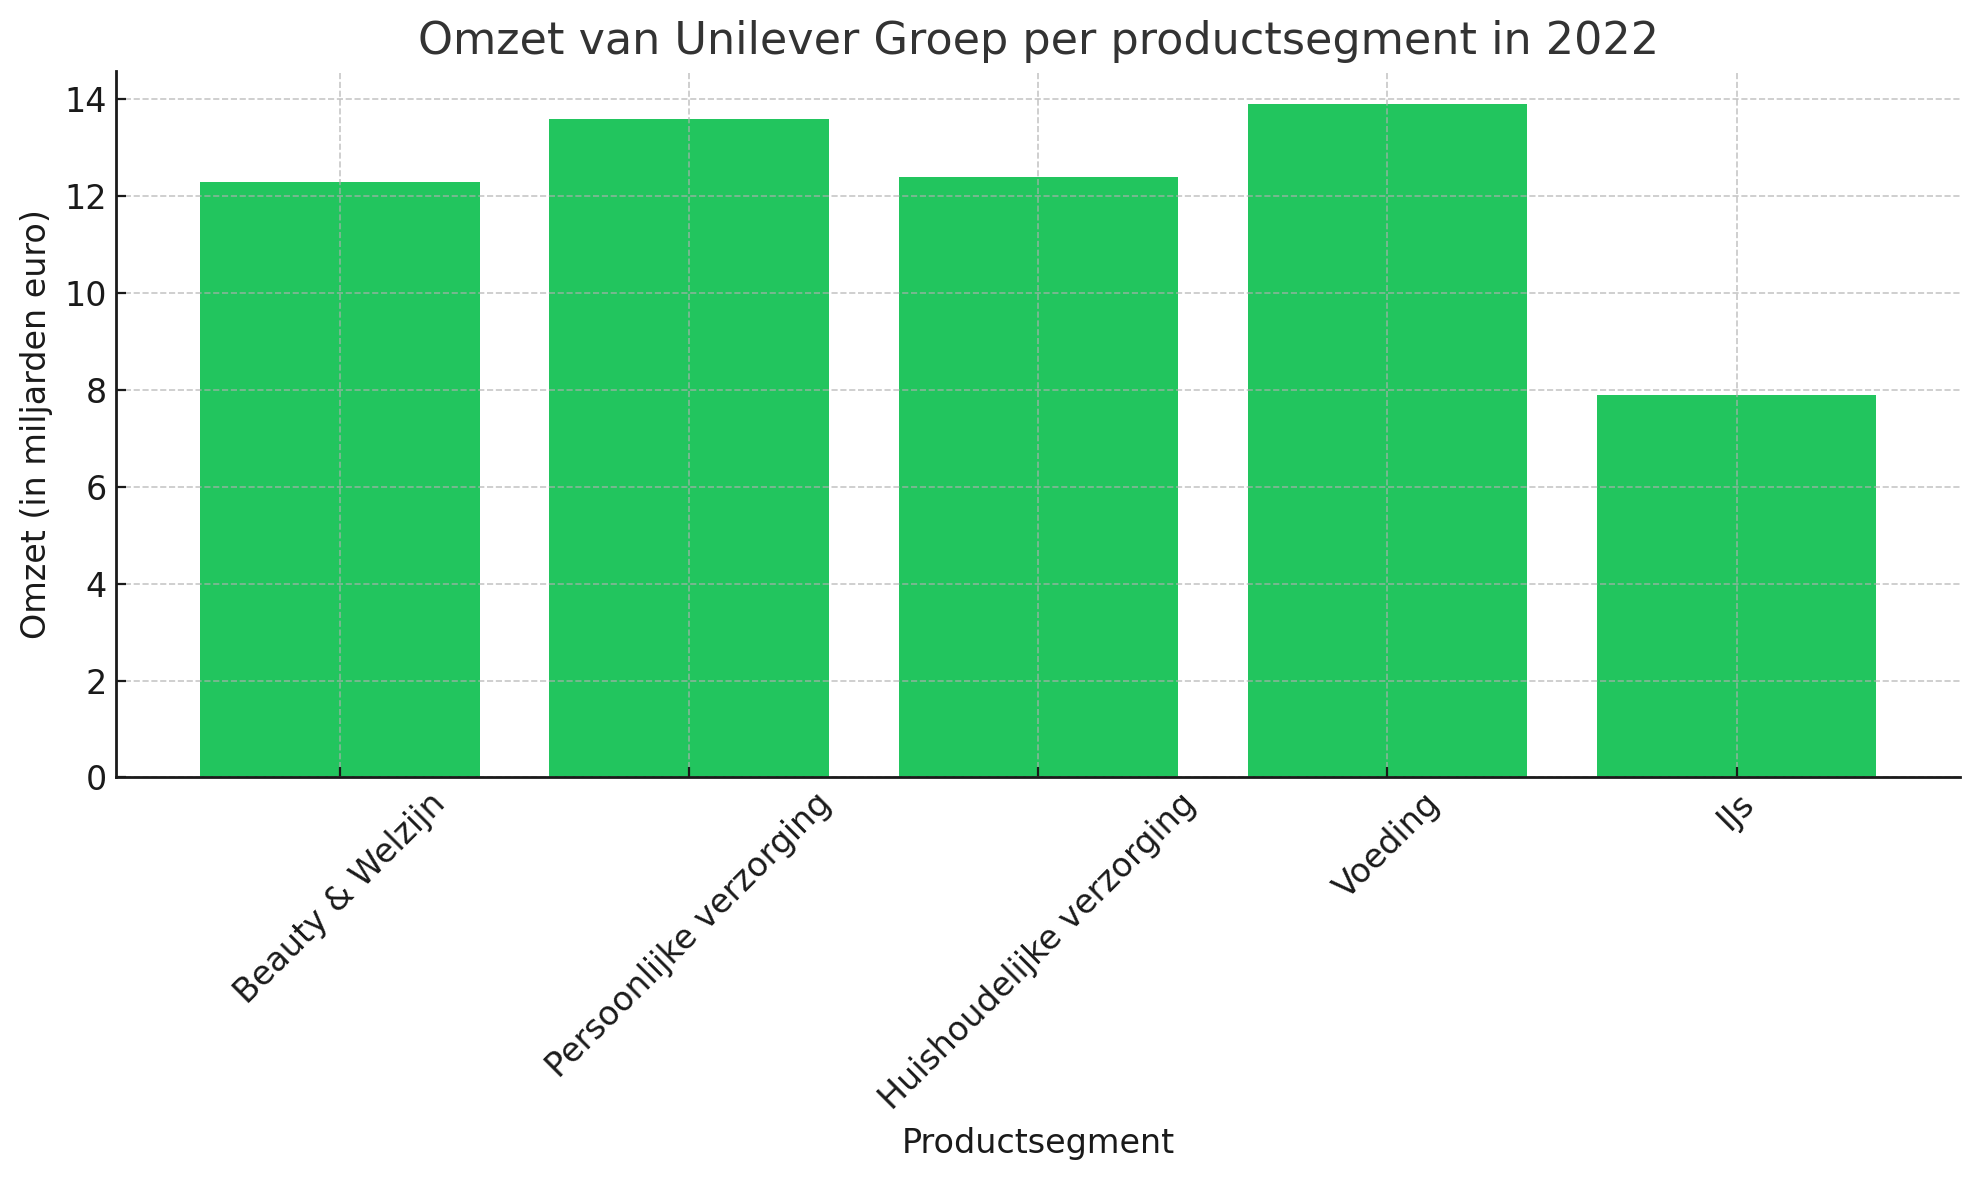 Omzet van Unilever Groep per productsegment